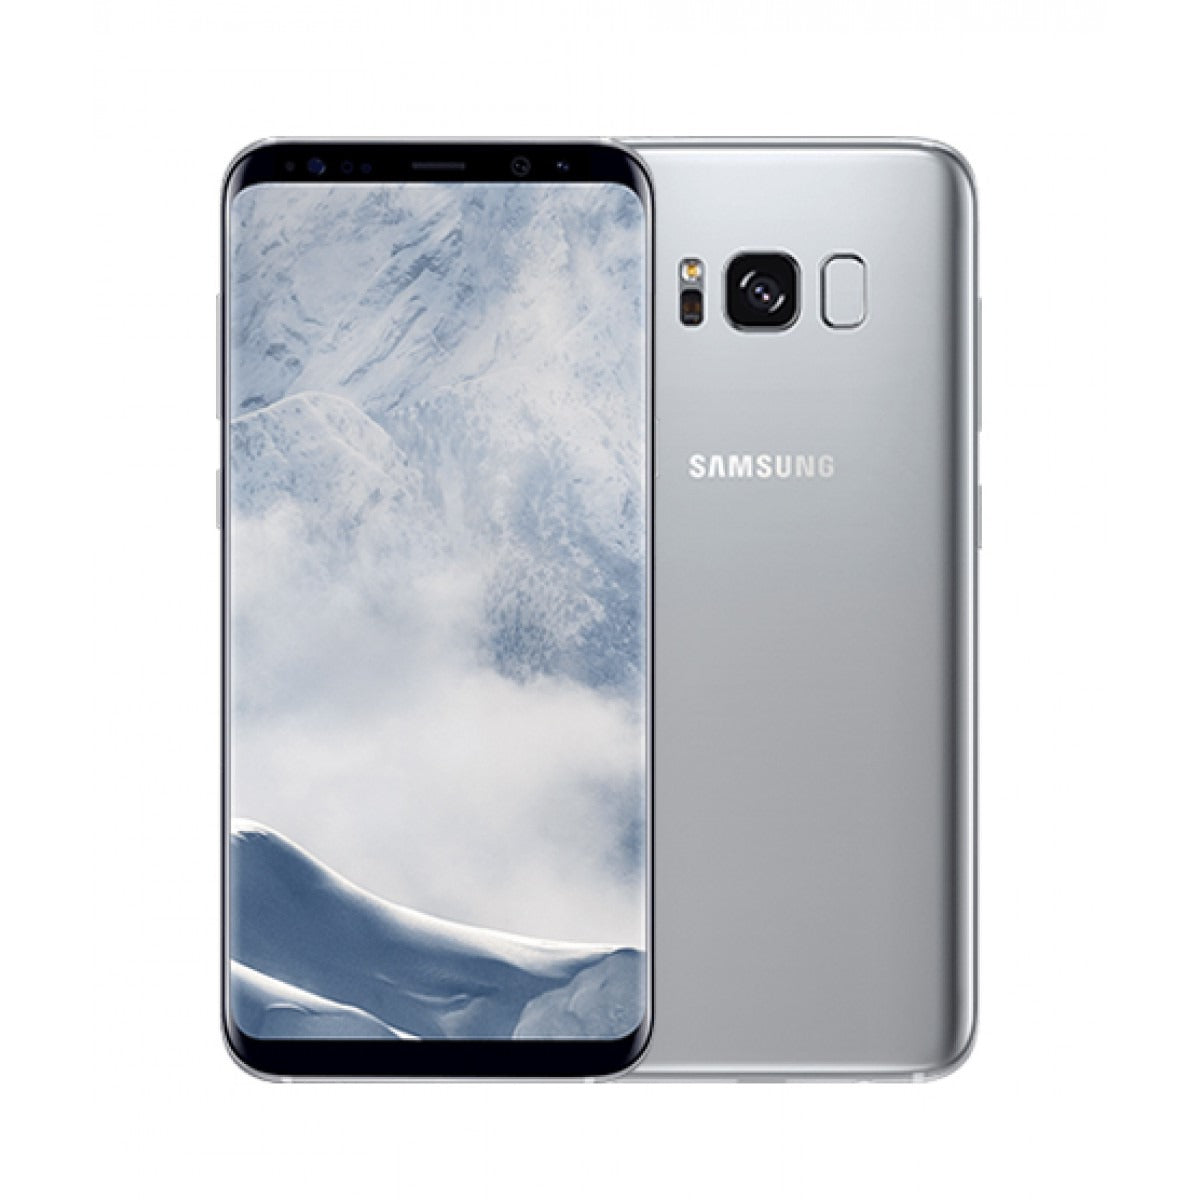 Samsung Galaxy S8 - 64 GB - Arctic Silver - Verizon - CDMA/GSM